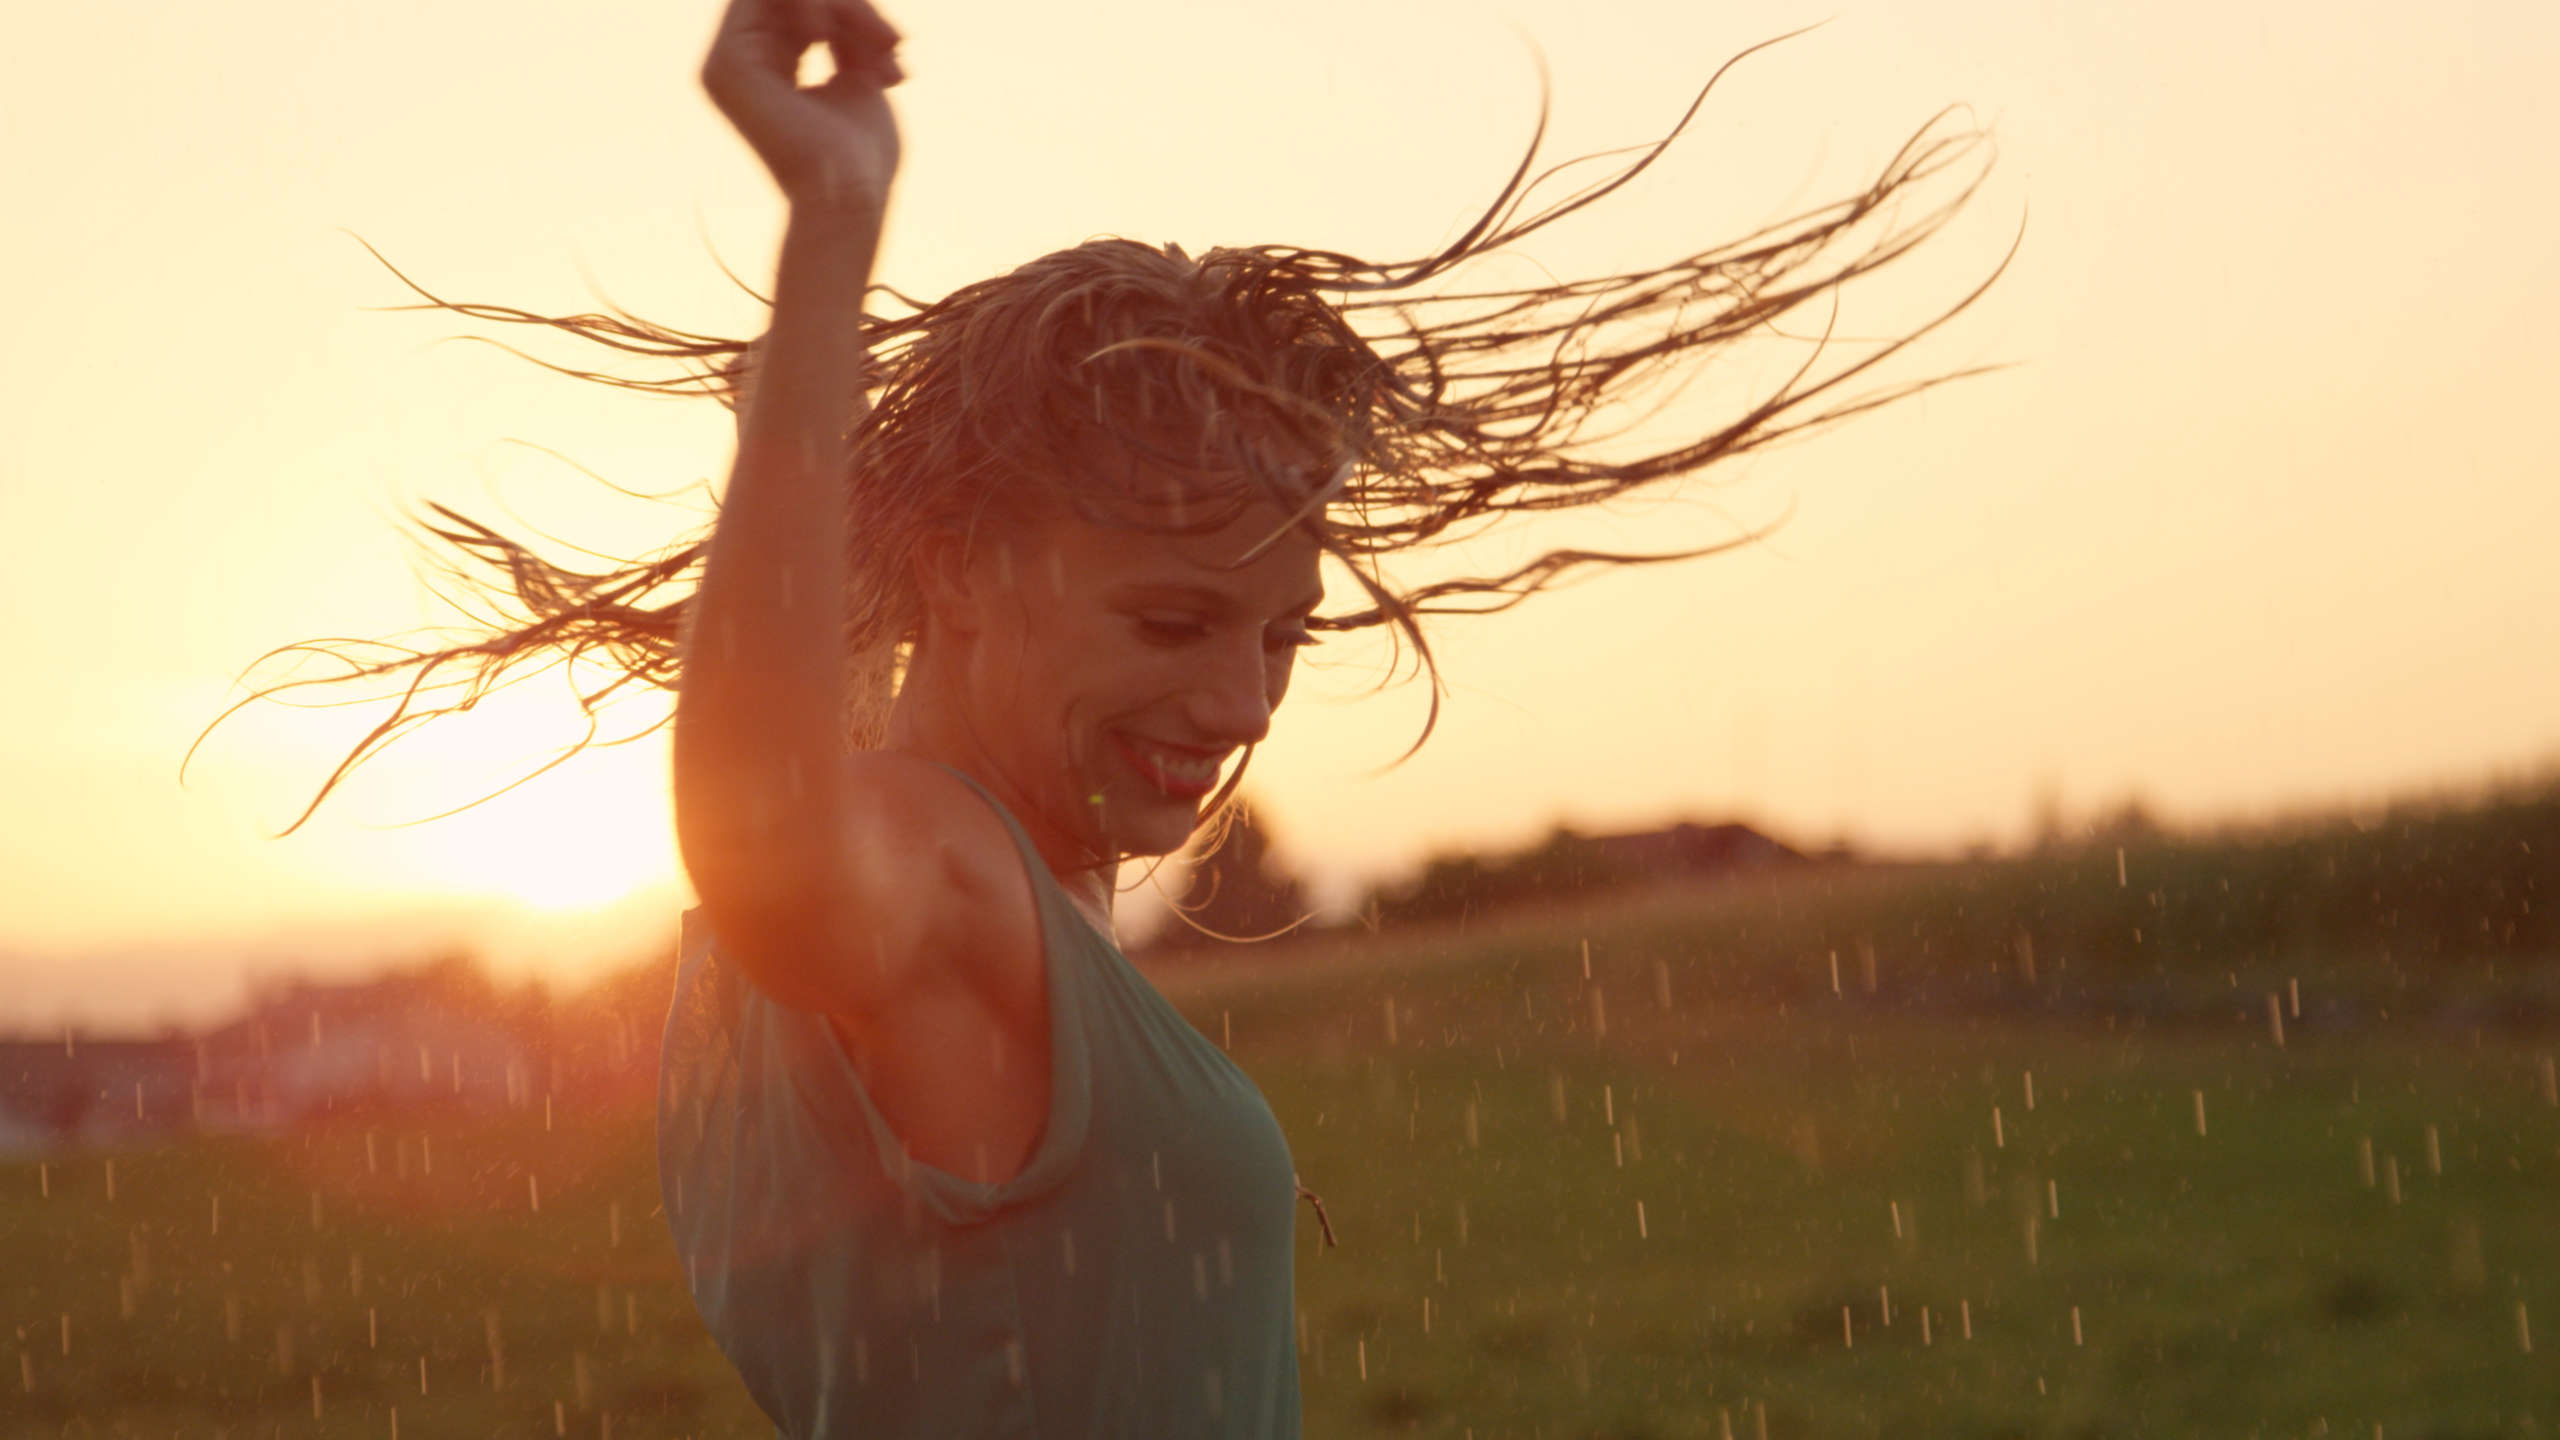 tańcząca na tle zachodzącego słońca kobieta z rozpuszczonymi włosami